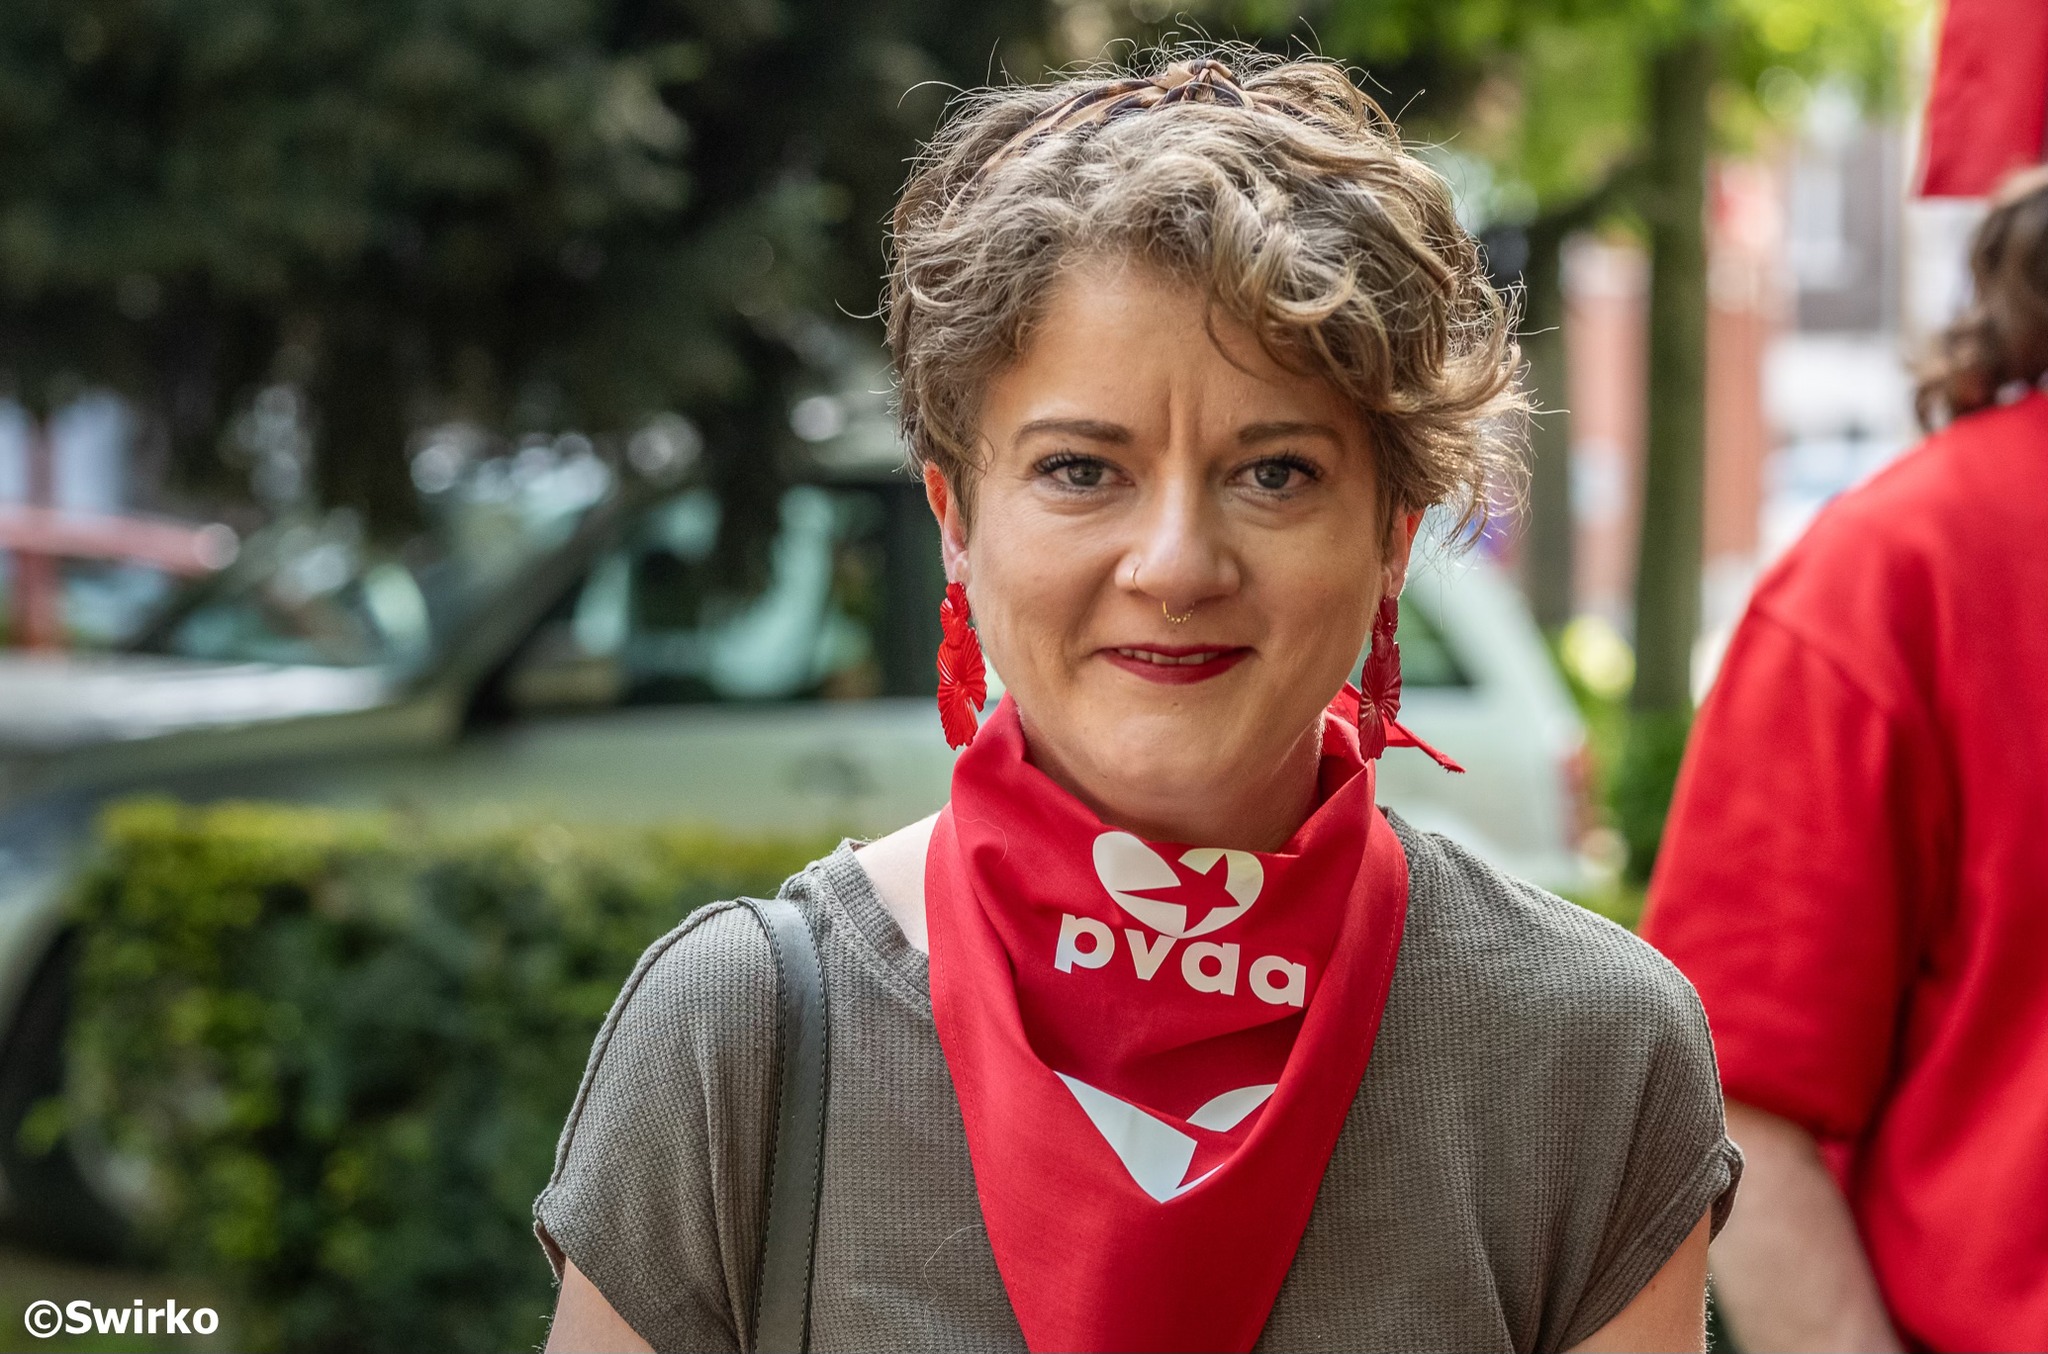 PVDA Aalst op 1 mei: "Bij de lokale verkiezingen van 13 oktober willen we voor het eerst verkozen raken in de Aalsterse gemeenteraad." 